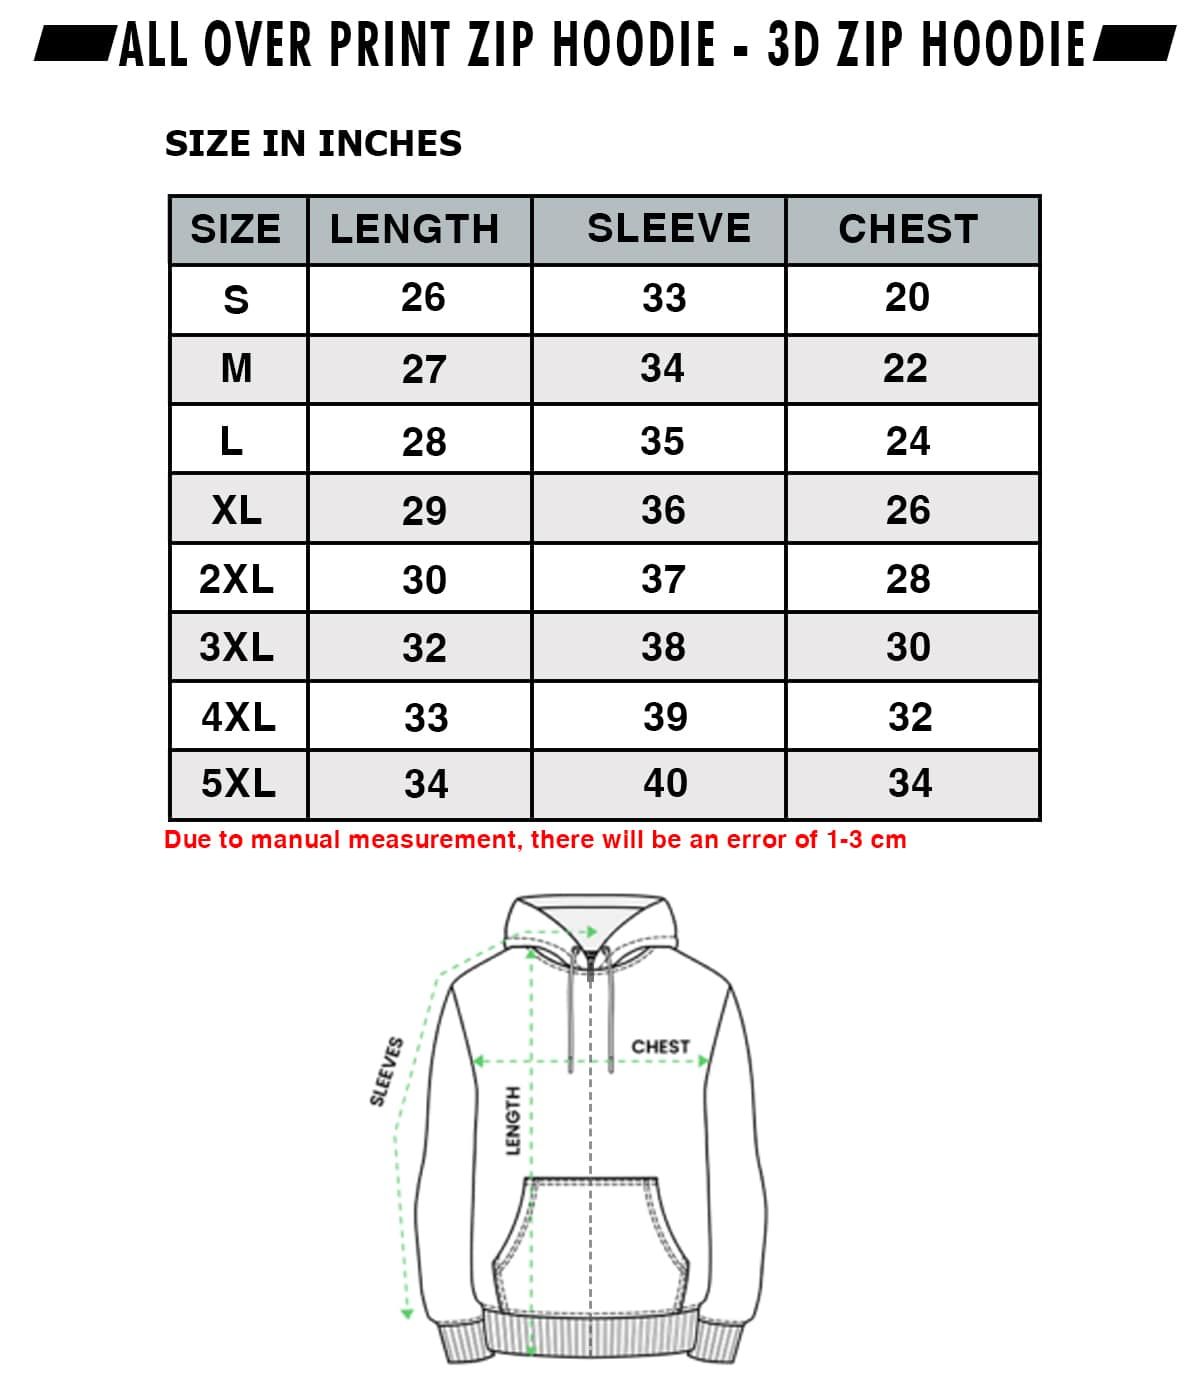 3d t-shirt size chart